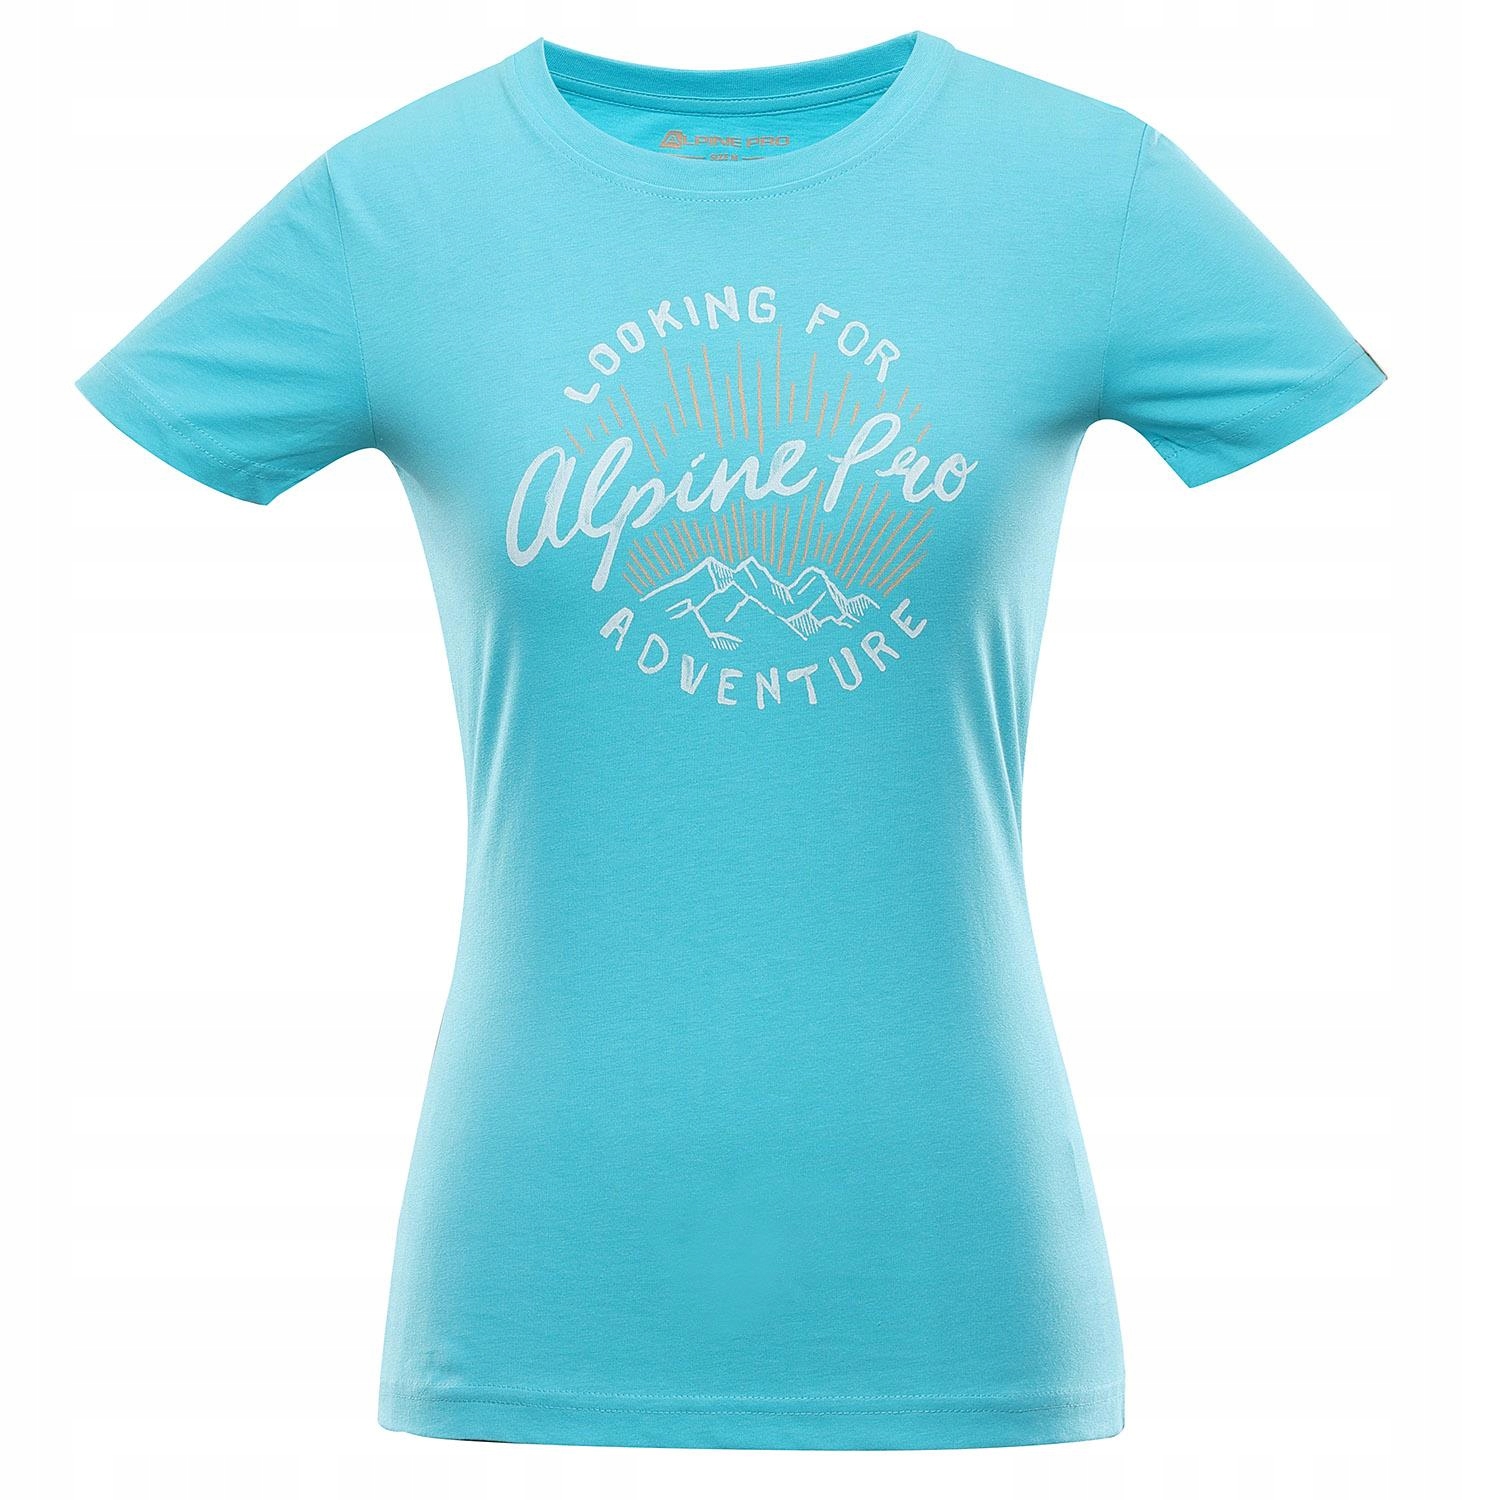 Женская футболка Alpine Pro Unega 8 R.S